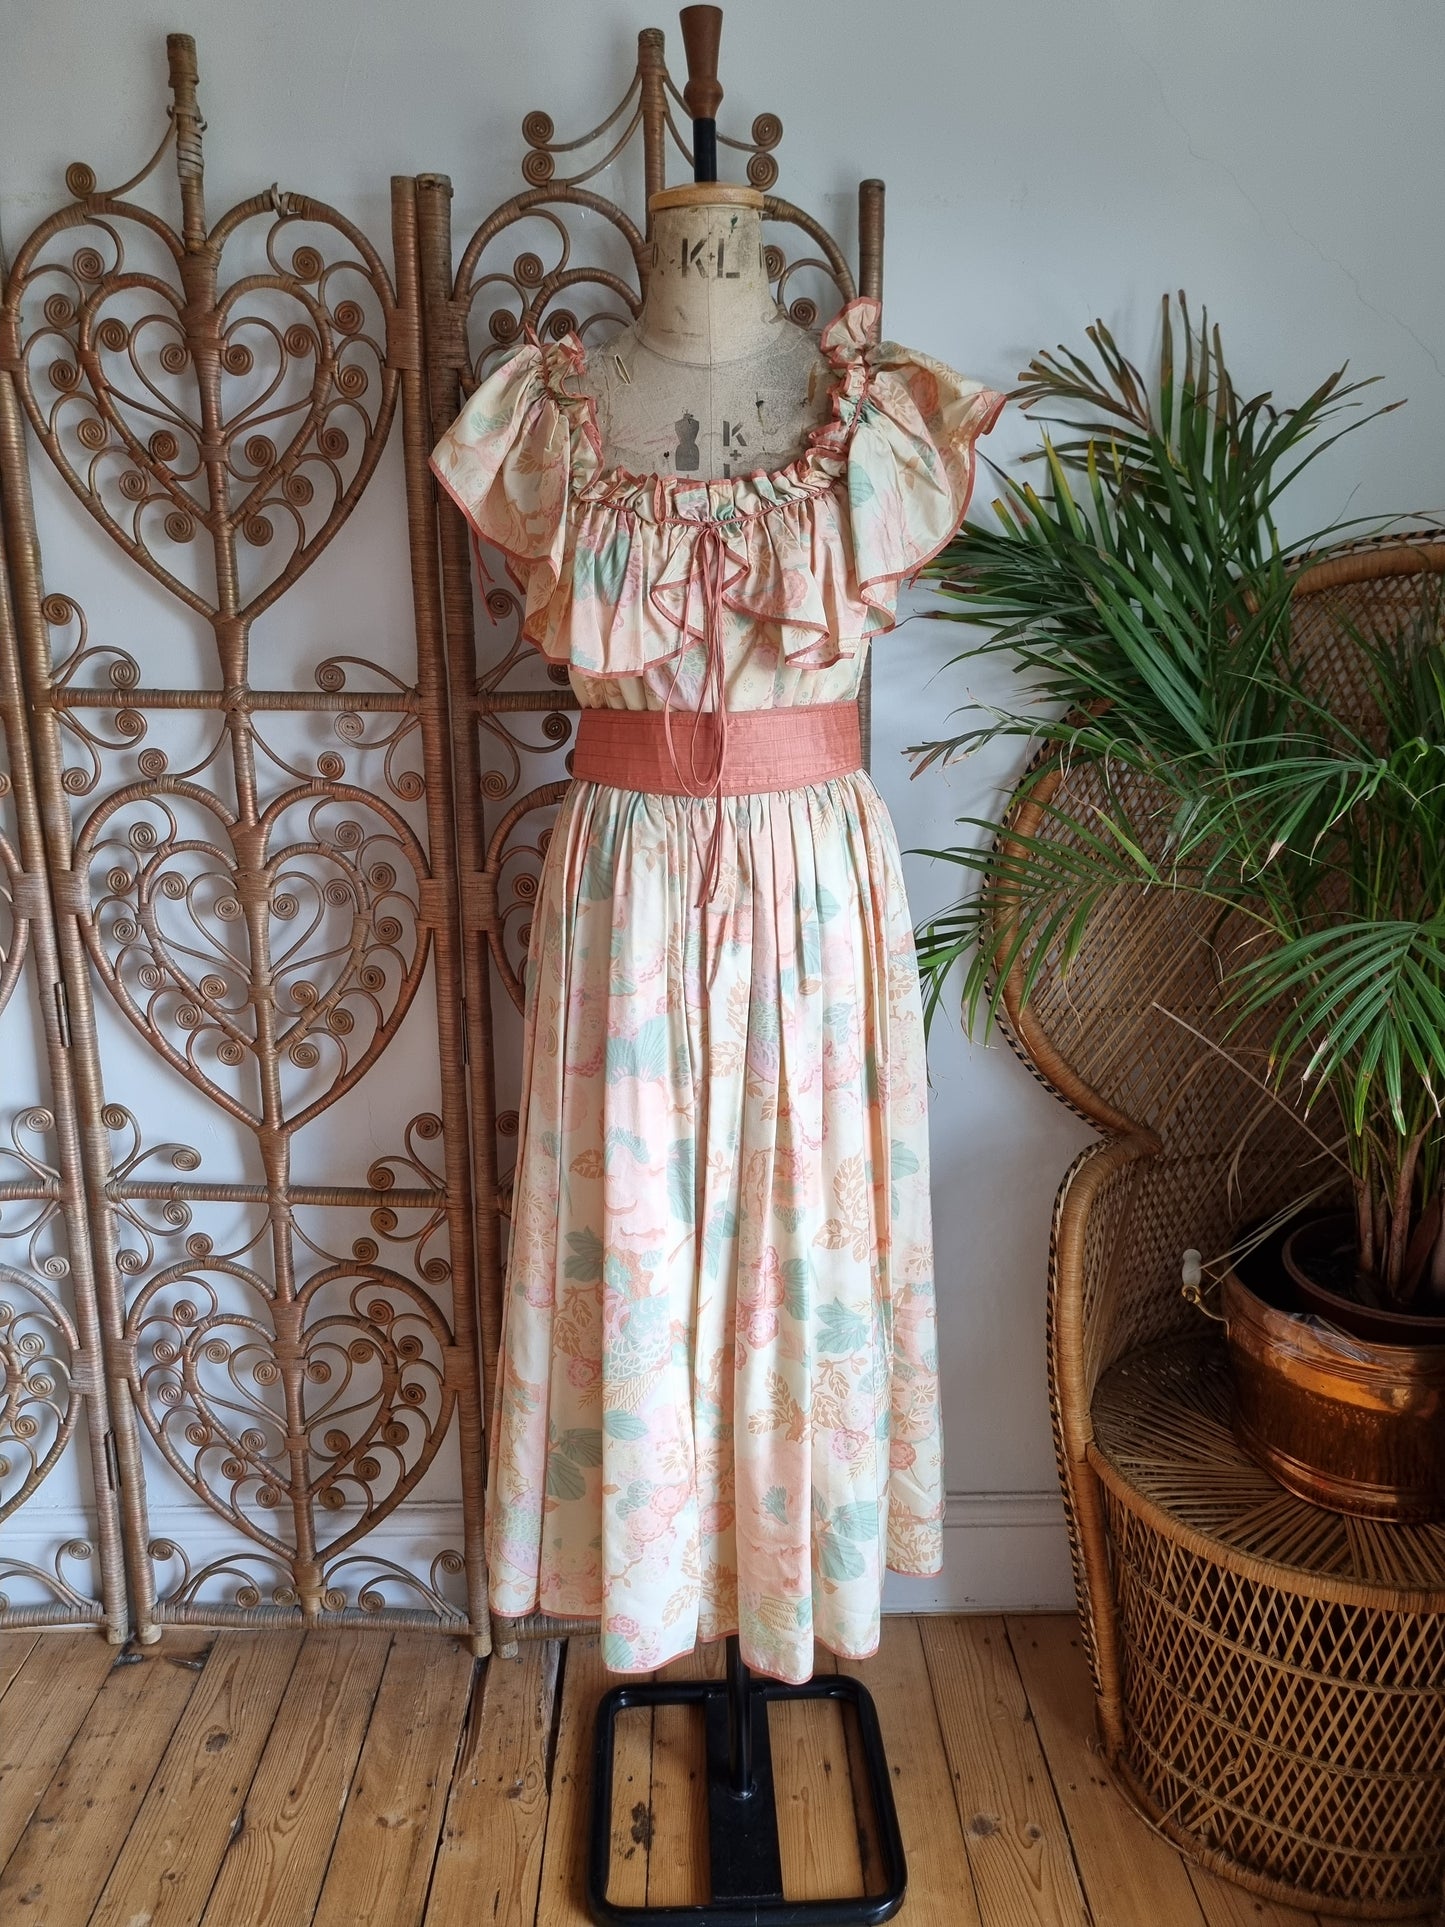 Vintage Anna Belinda dress